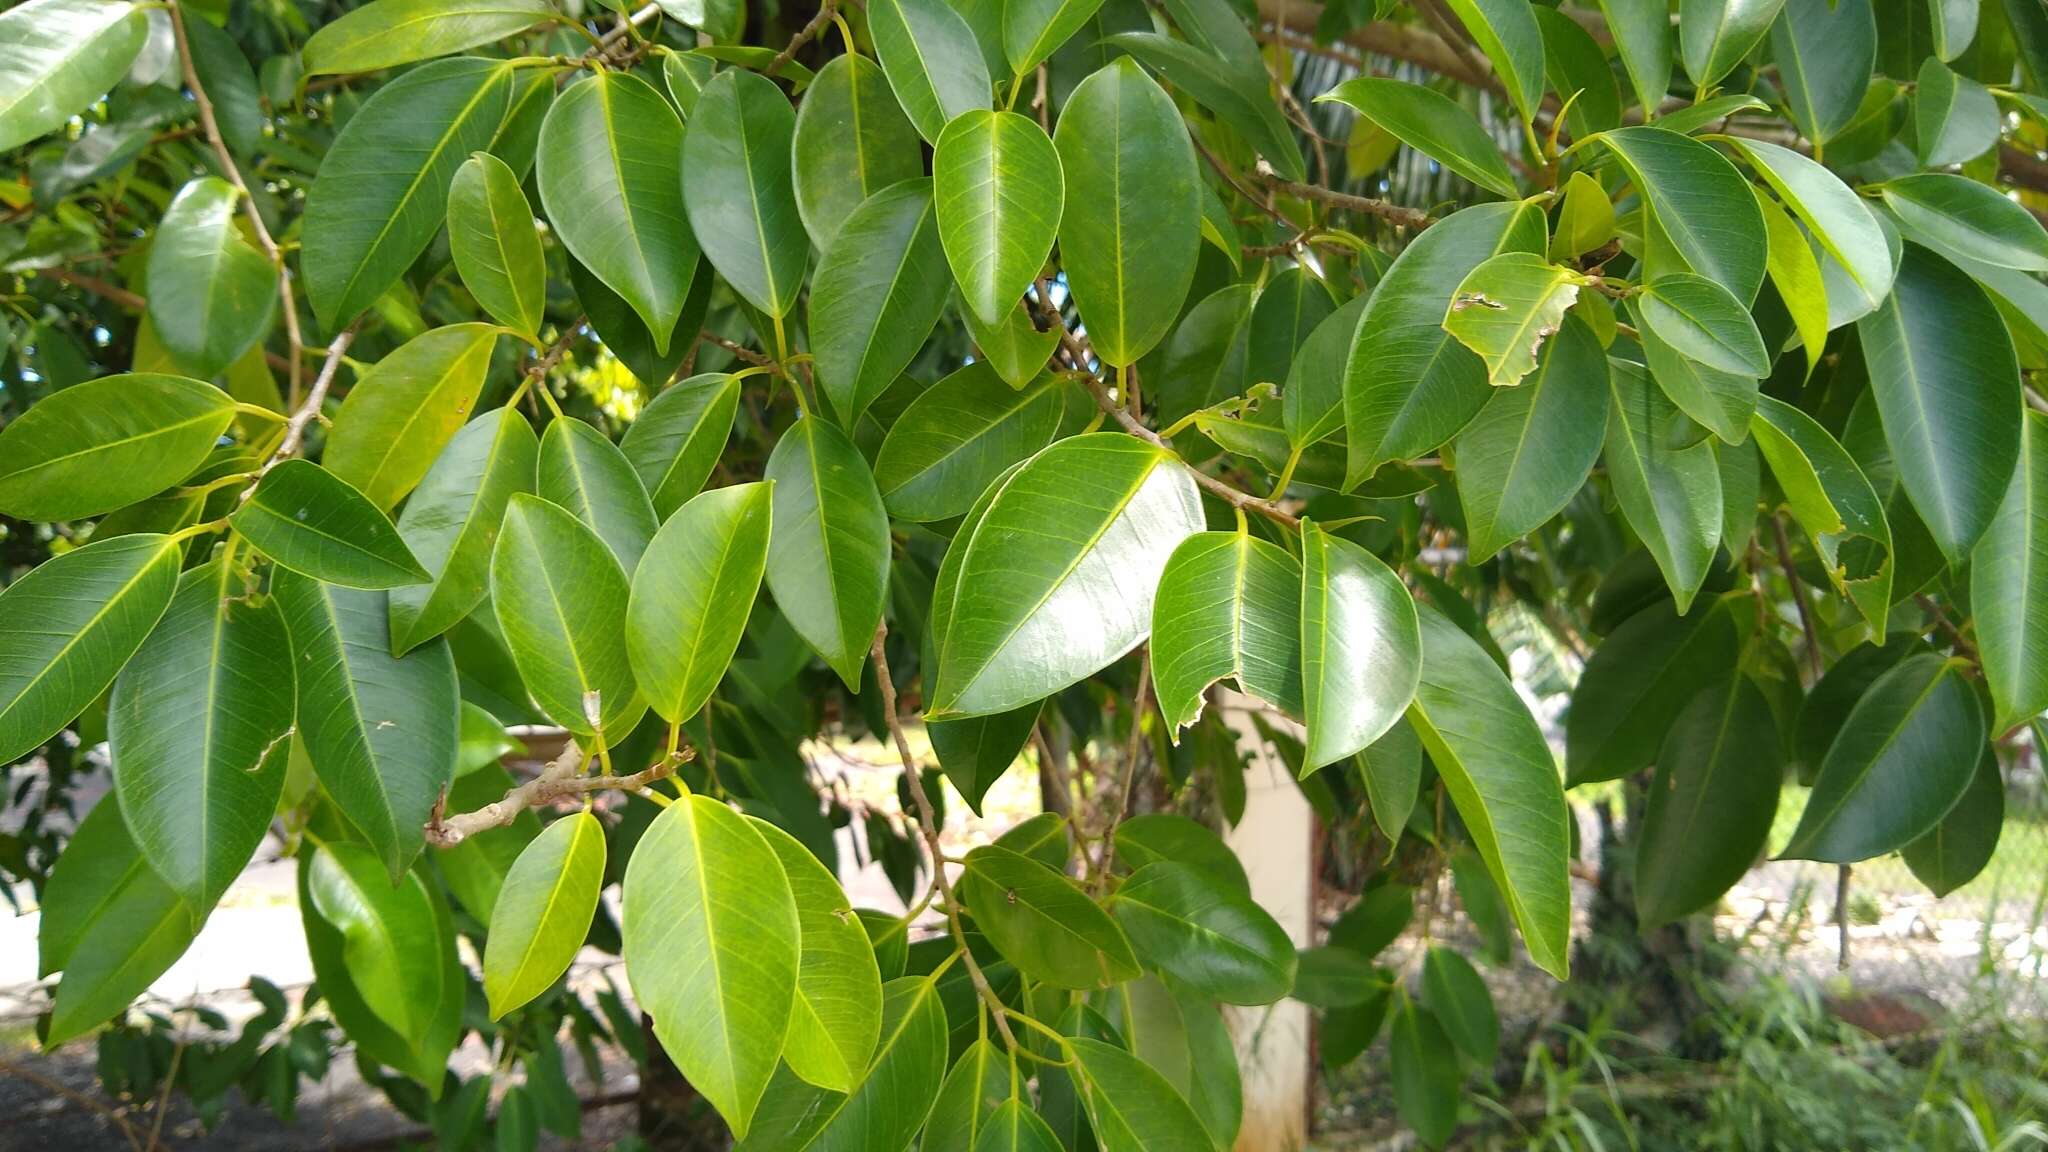 Ficus prolixa Forst. fil.的圖片